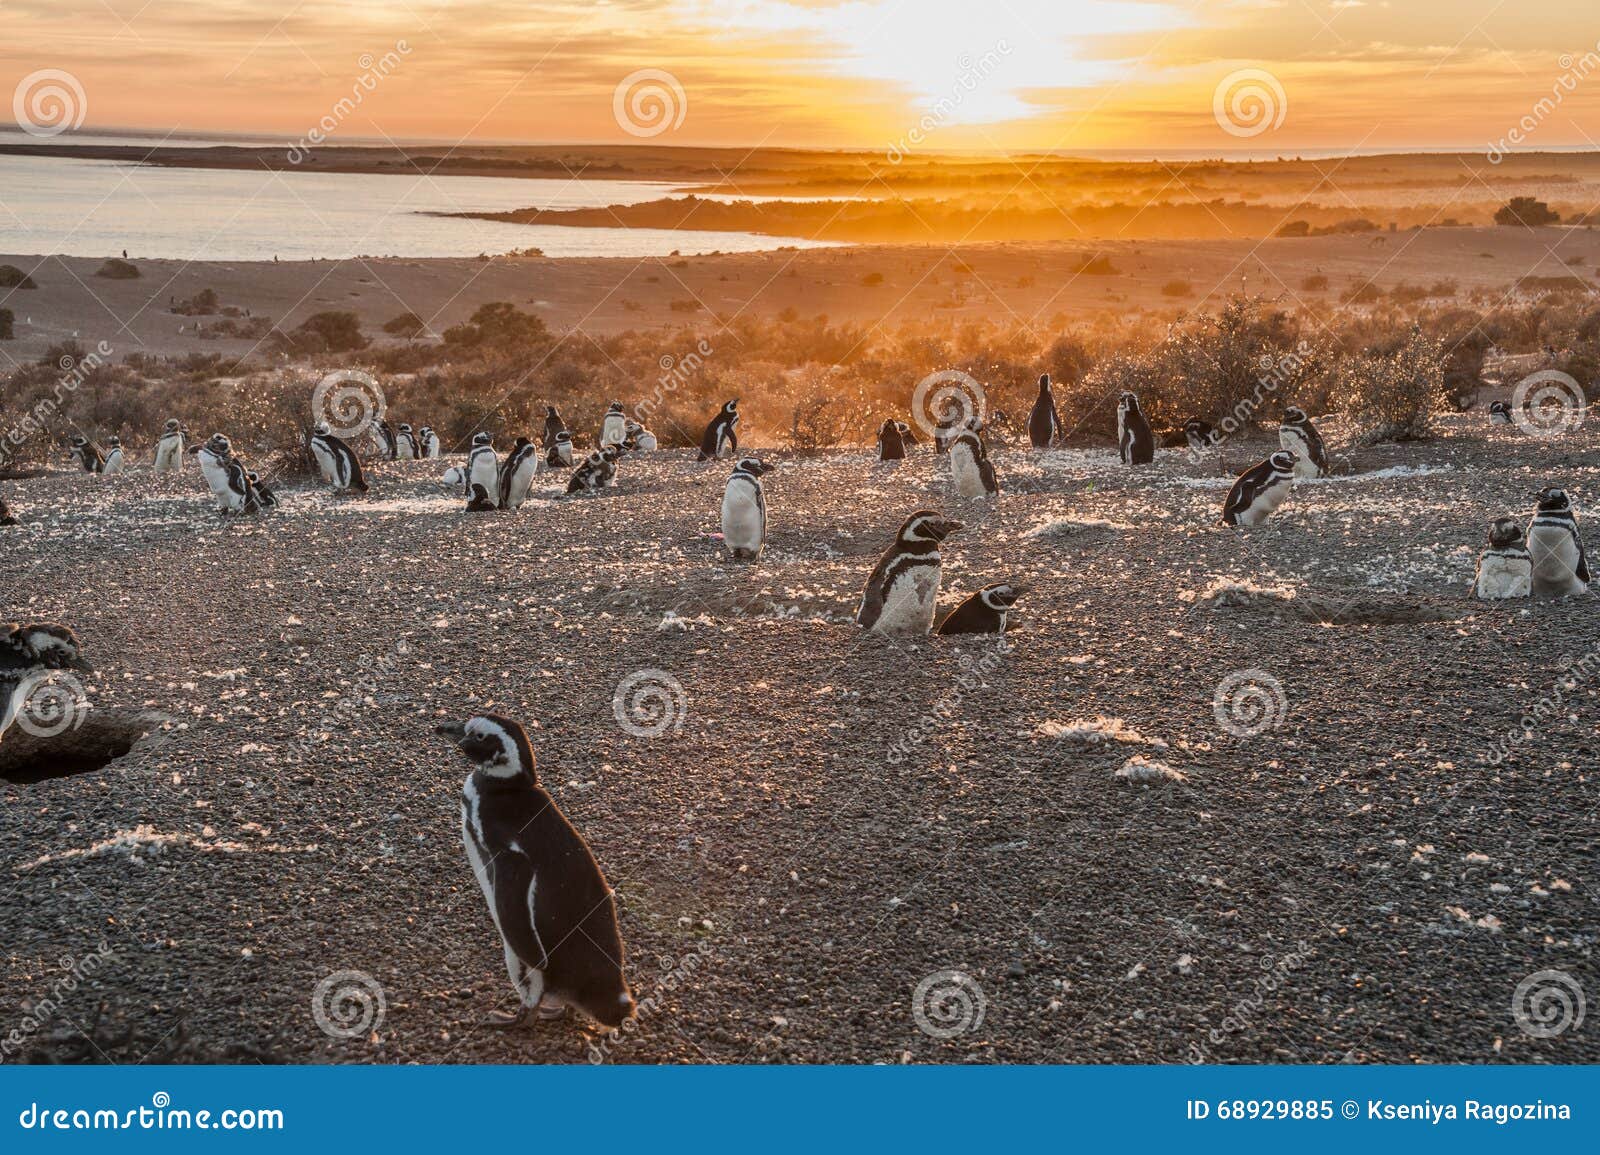 magellanic penguins at punto tombo